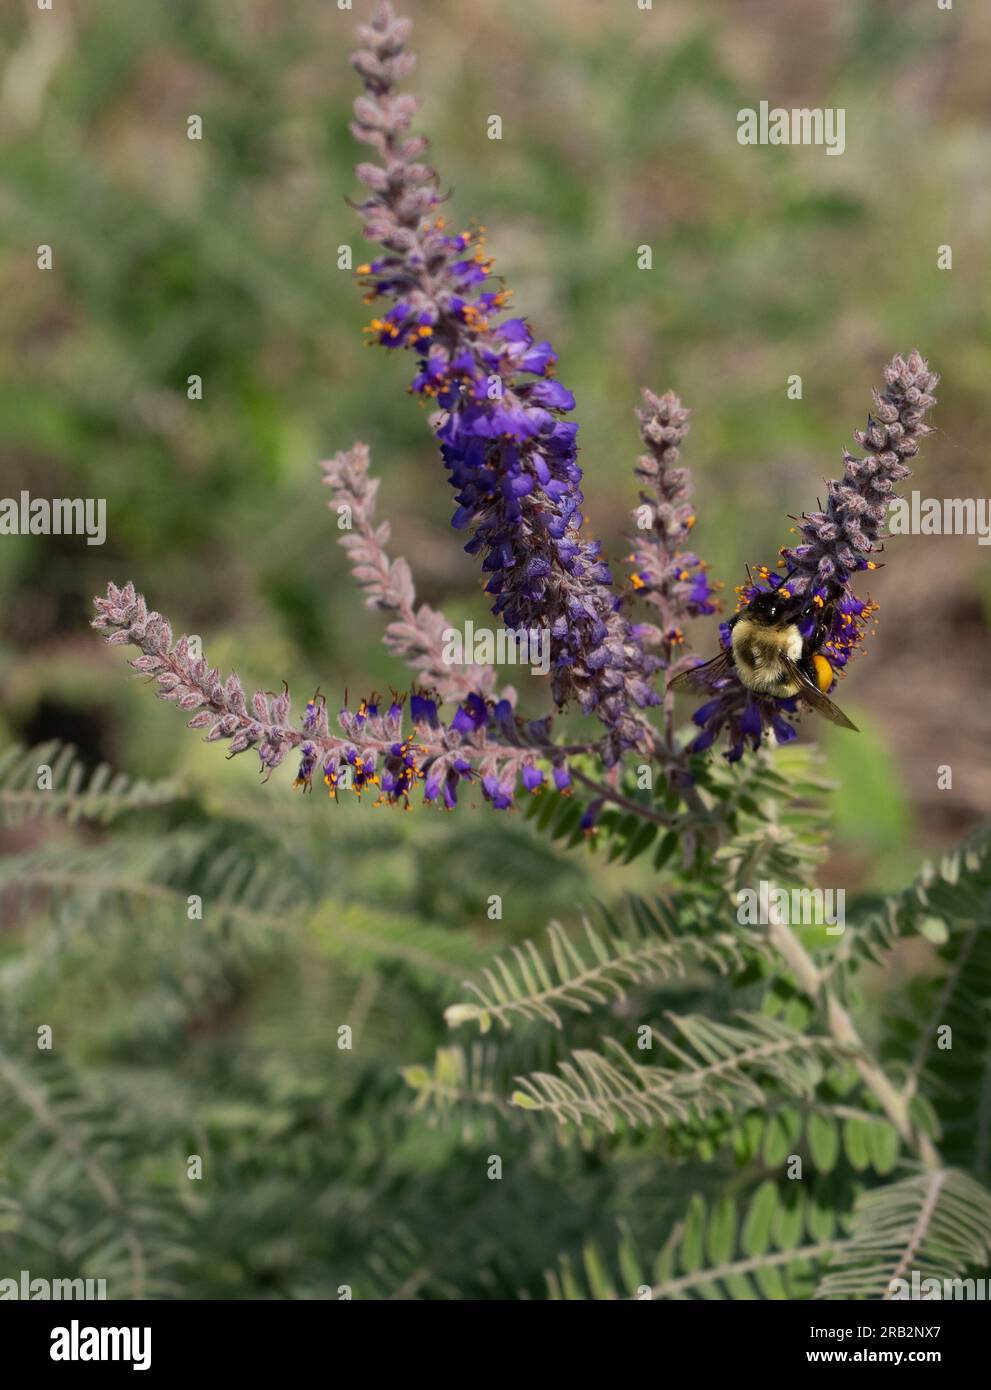 Bumblebee con cesti completi di polline che raccolgono più polline da fiori viola su una pianta di piombo o canescens di Amorpha in Minnesota. Foto Stock